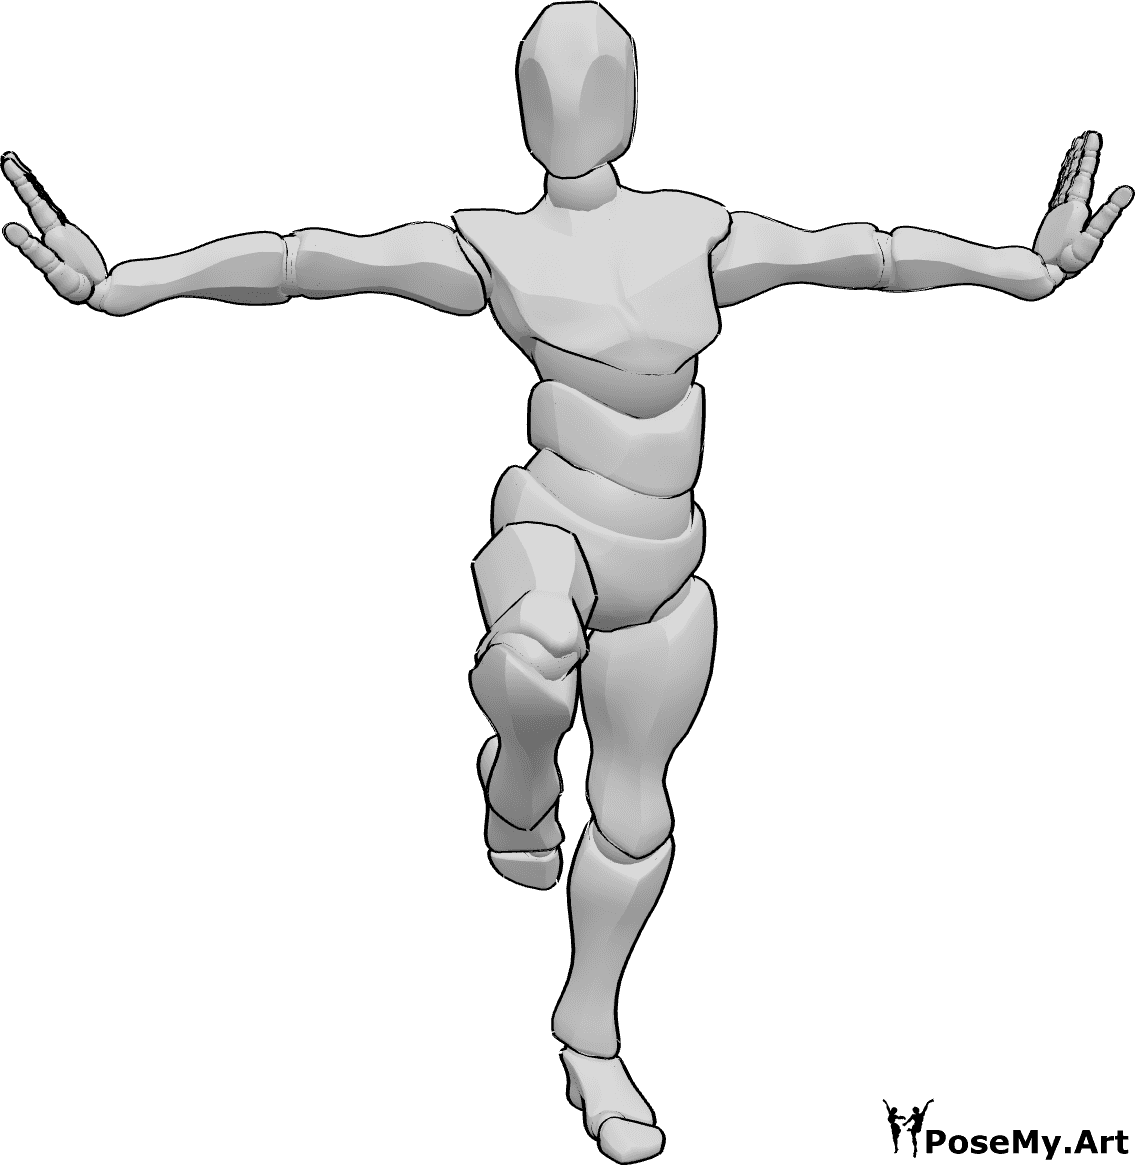 Referência de poses- Pose da perna esquerda em pé - Homem de pé numa só perna em pose de kung fu